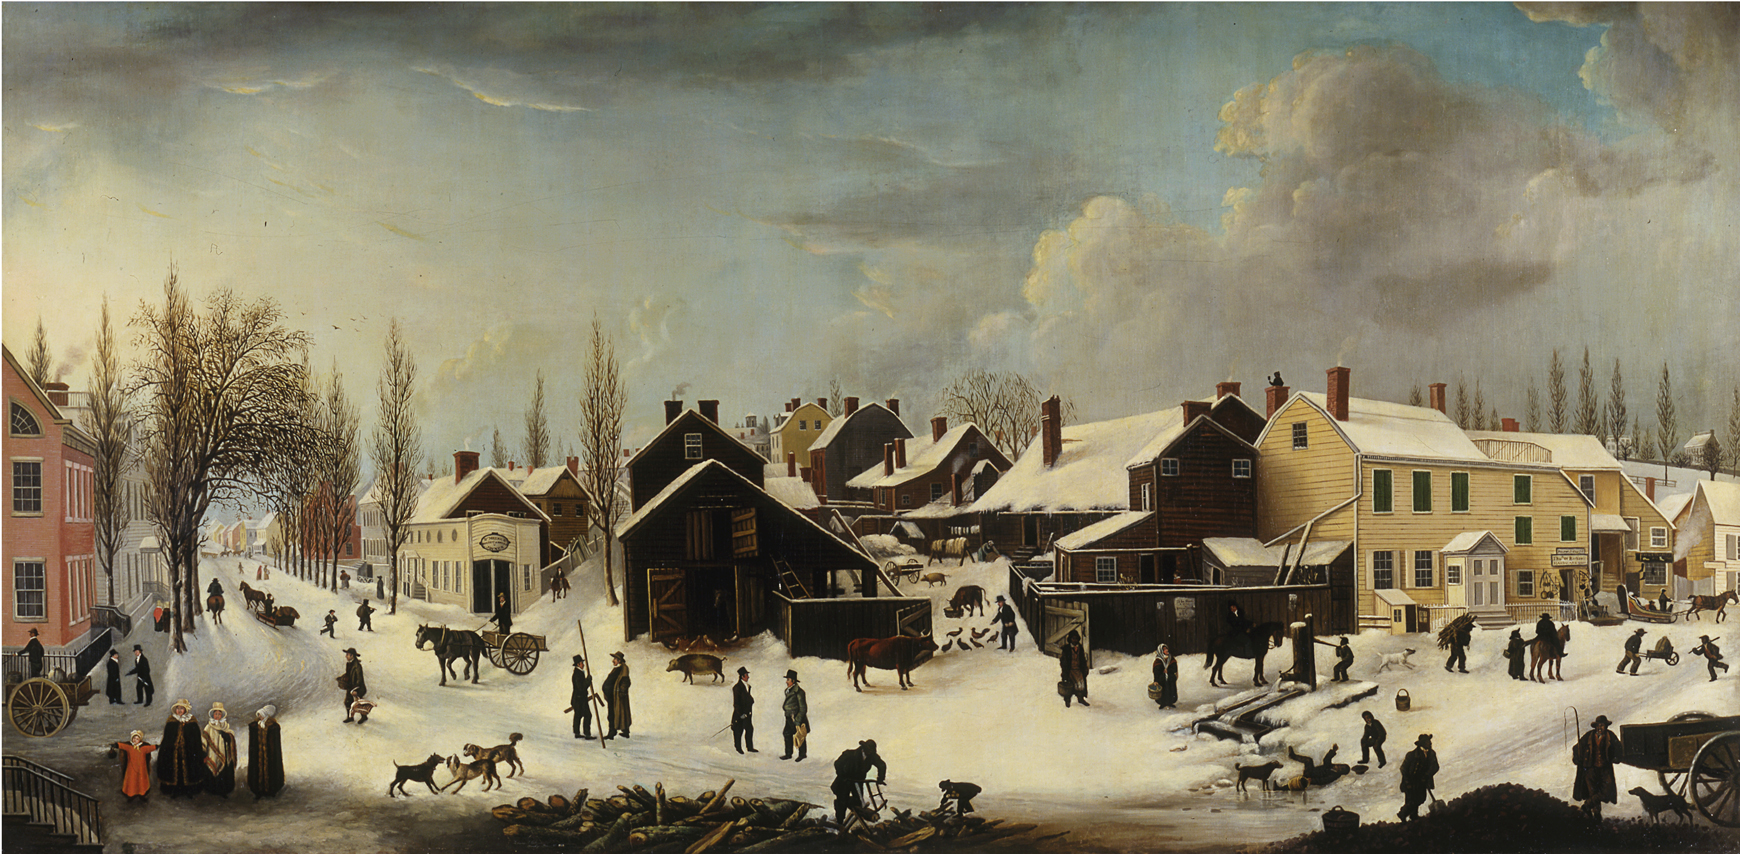 ルイーザ・アン・コールマン、ニューヨーク州ブルックリンの冬景色、1817～1820年、1853年。ニューヨーク市立博物館。 53.2。